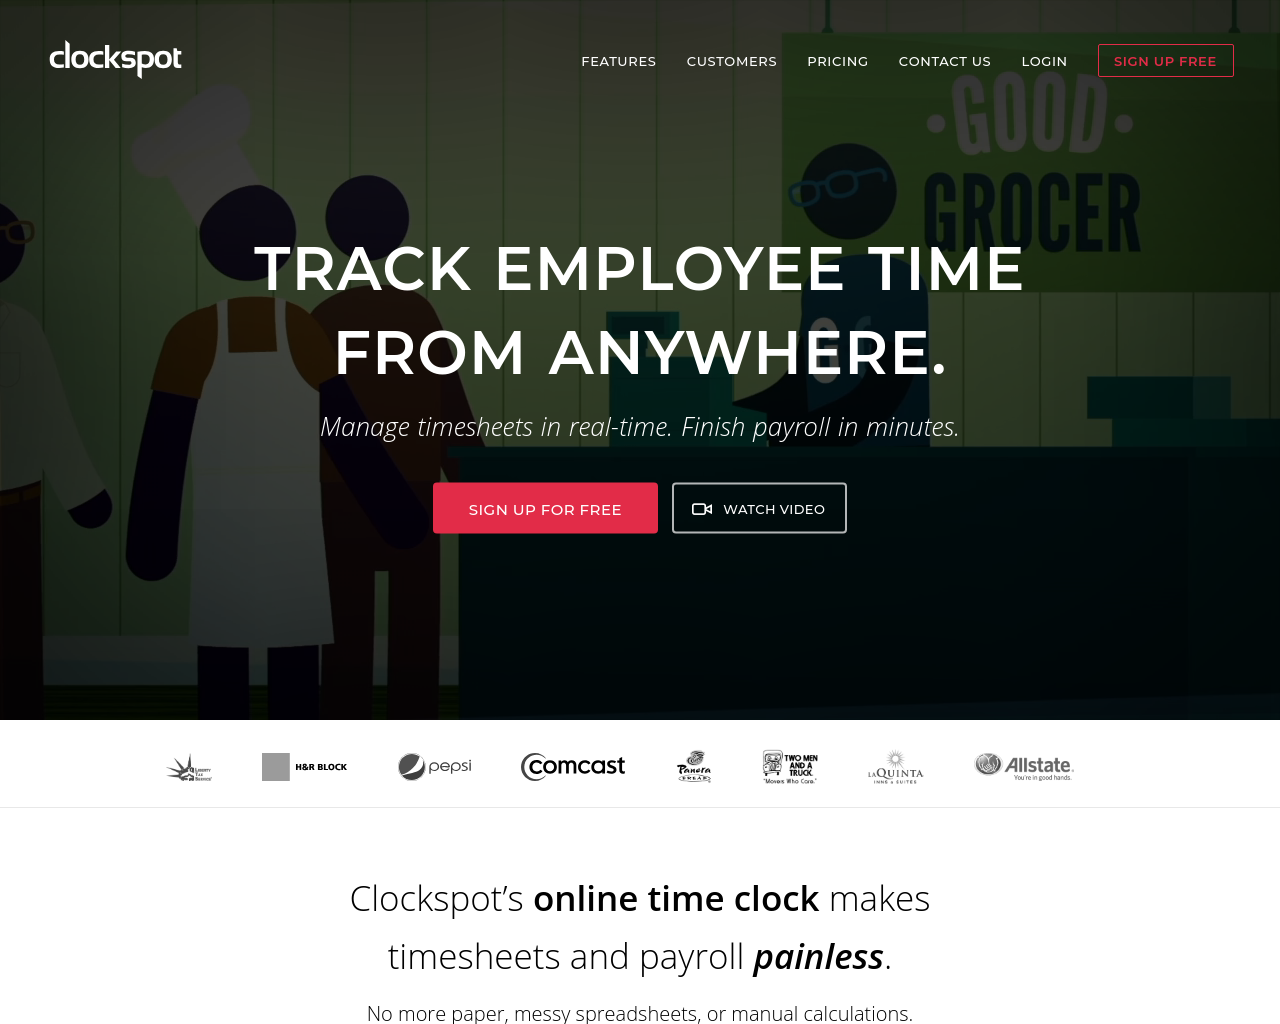 clockspot.com